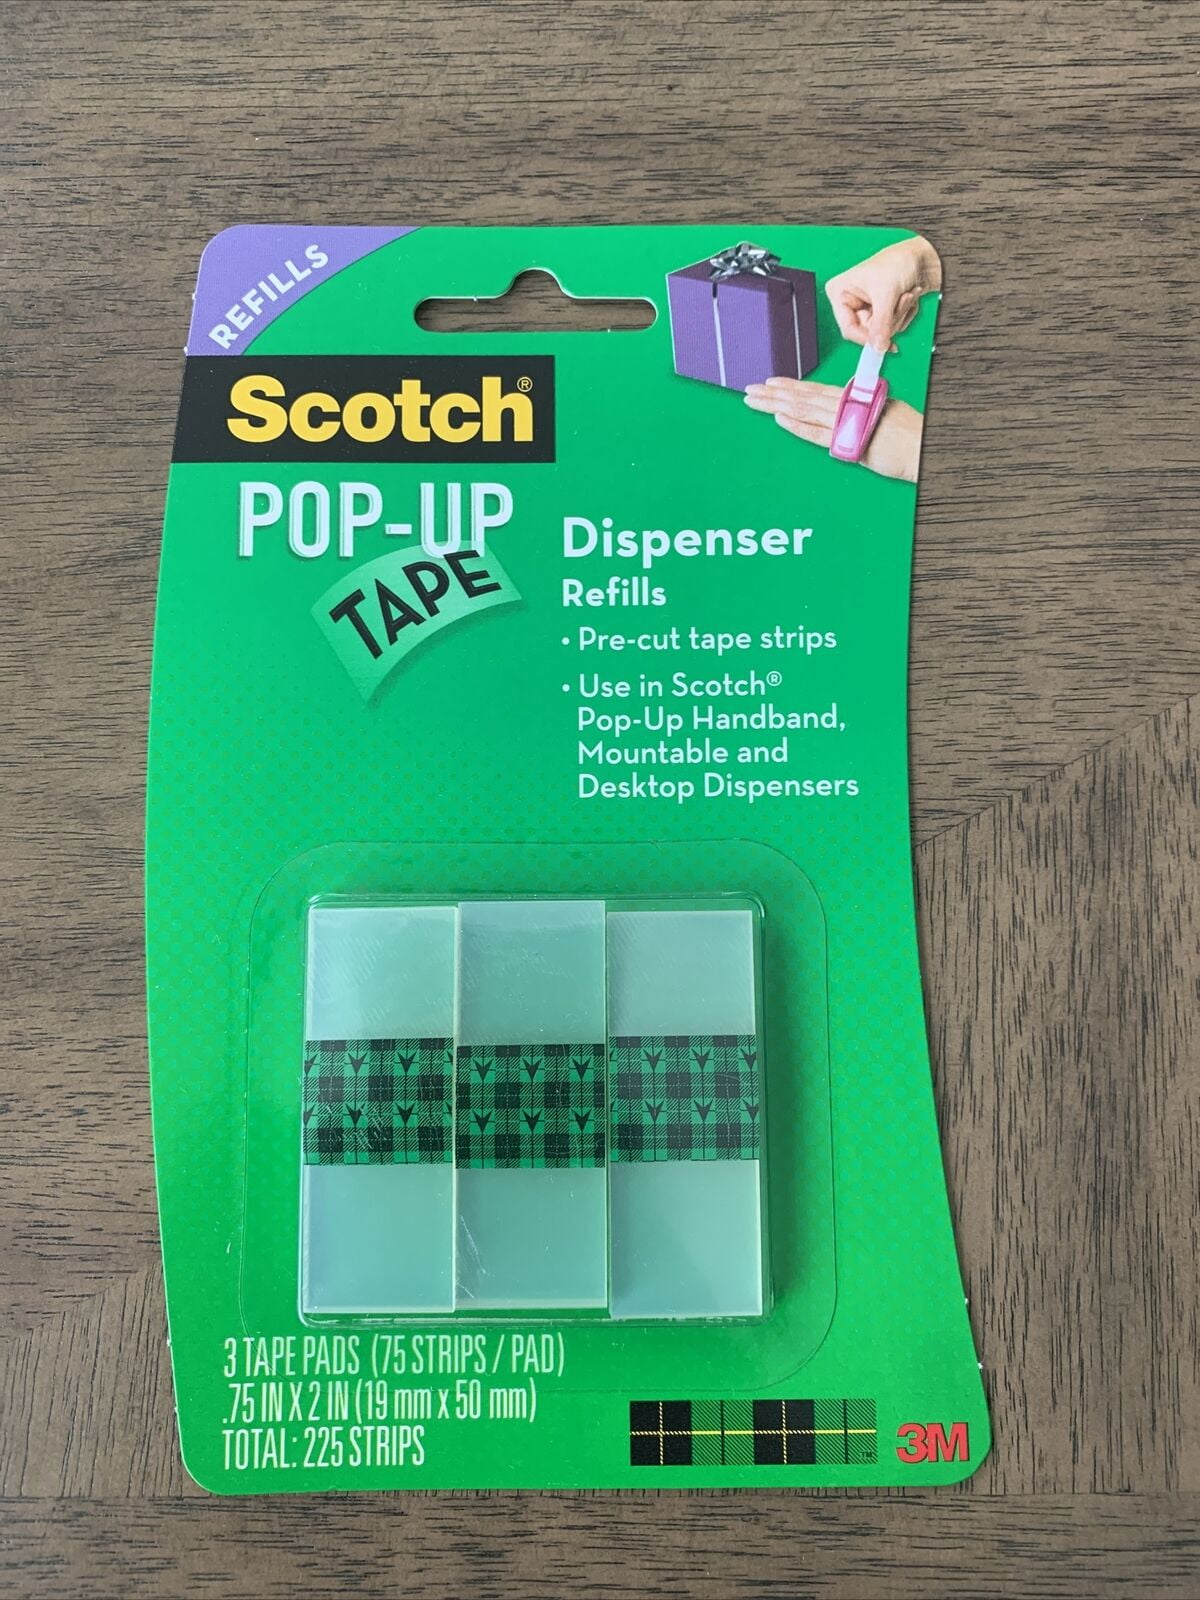 2 Packs - 3M Scotch Pop-Up Tape Refills - 3 tape pads per pack (75 strips  per